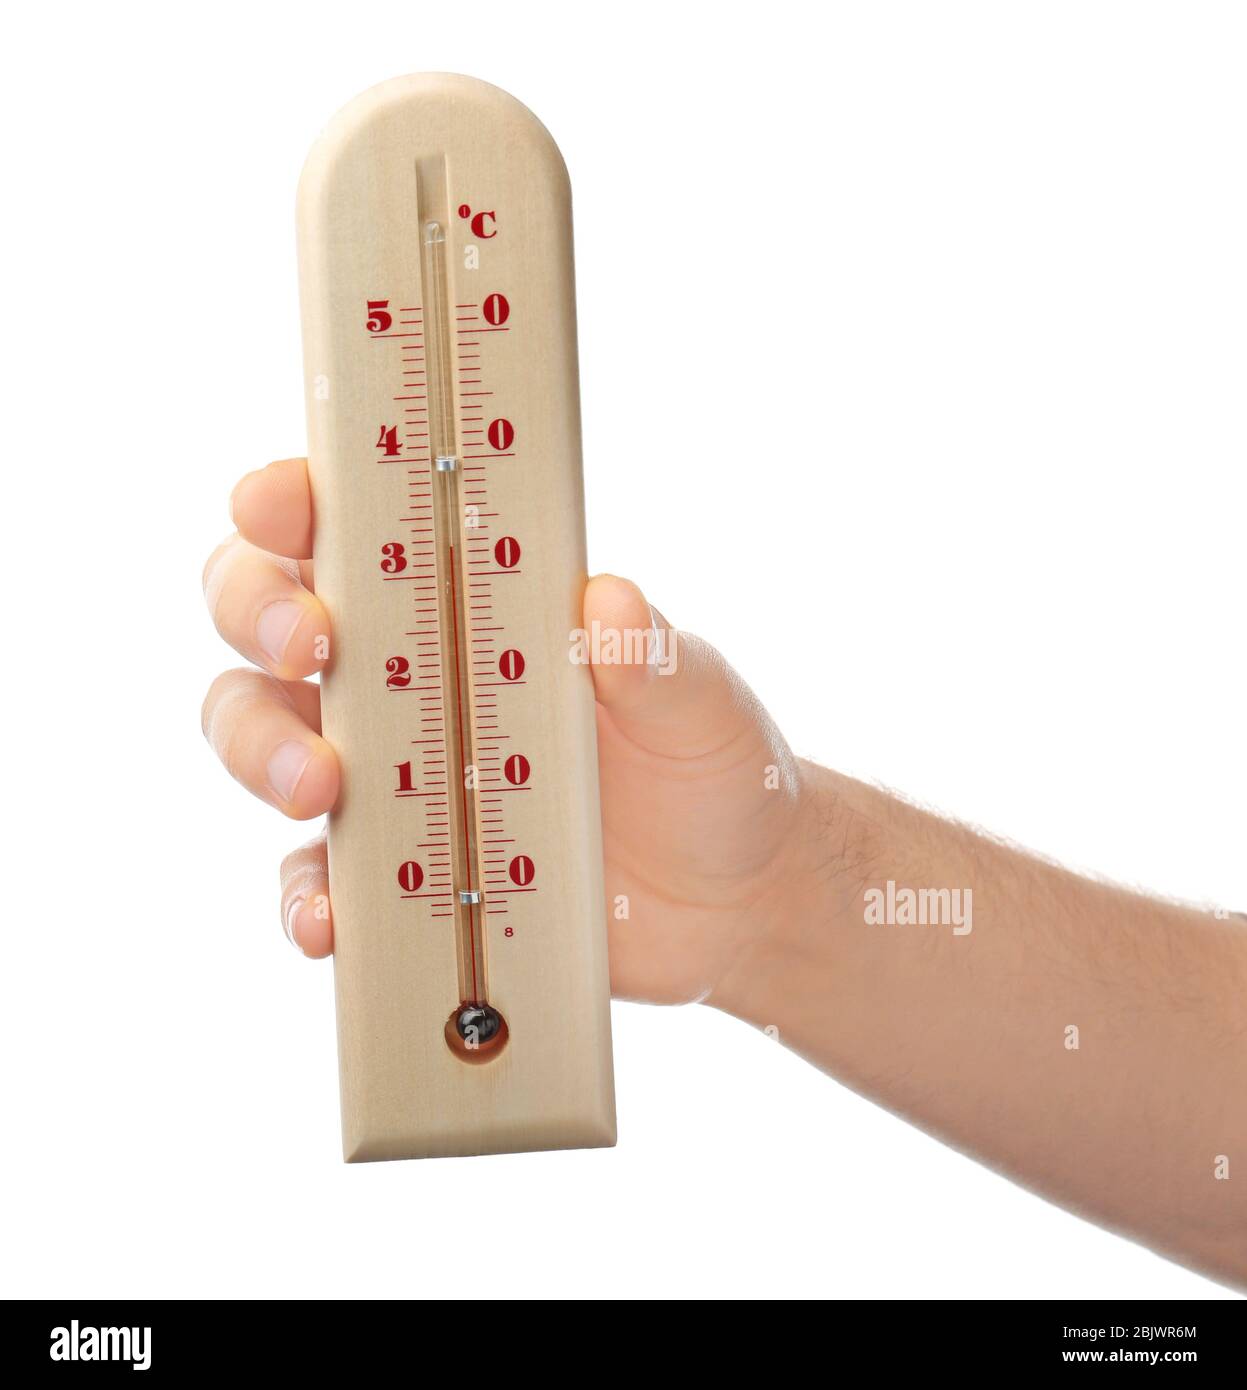 Frau hält Wetterthermometer auf weißem Hintergrund Stockfotografie - Alamy